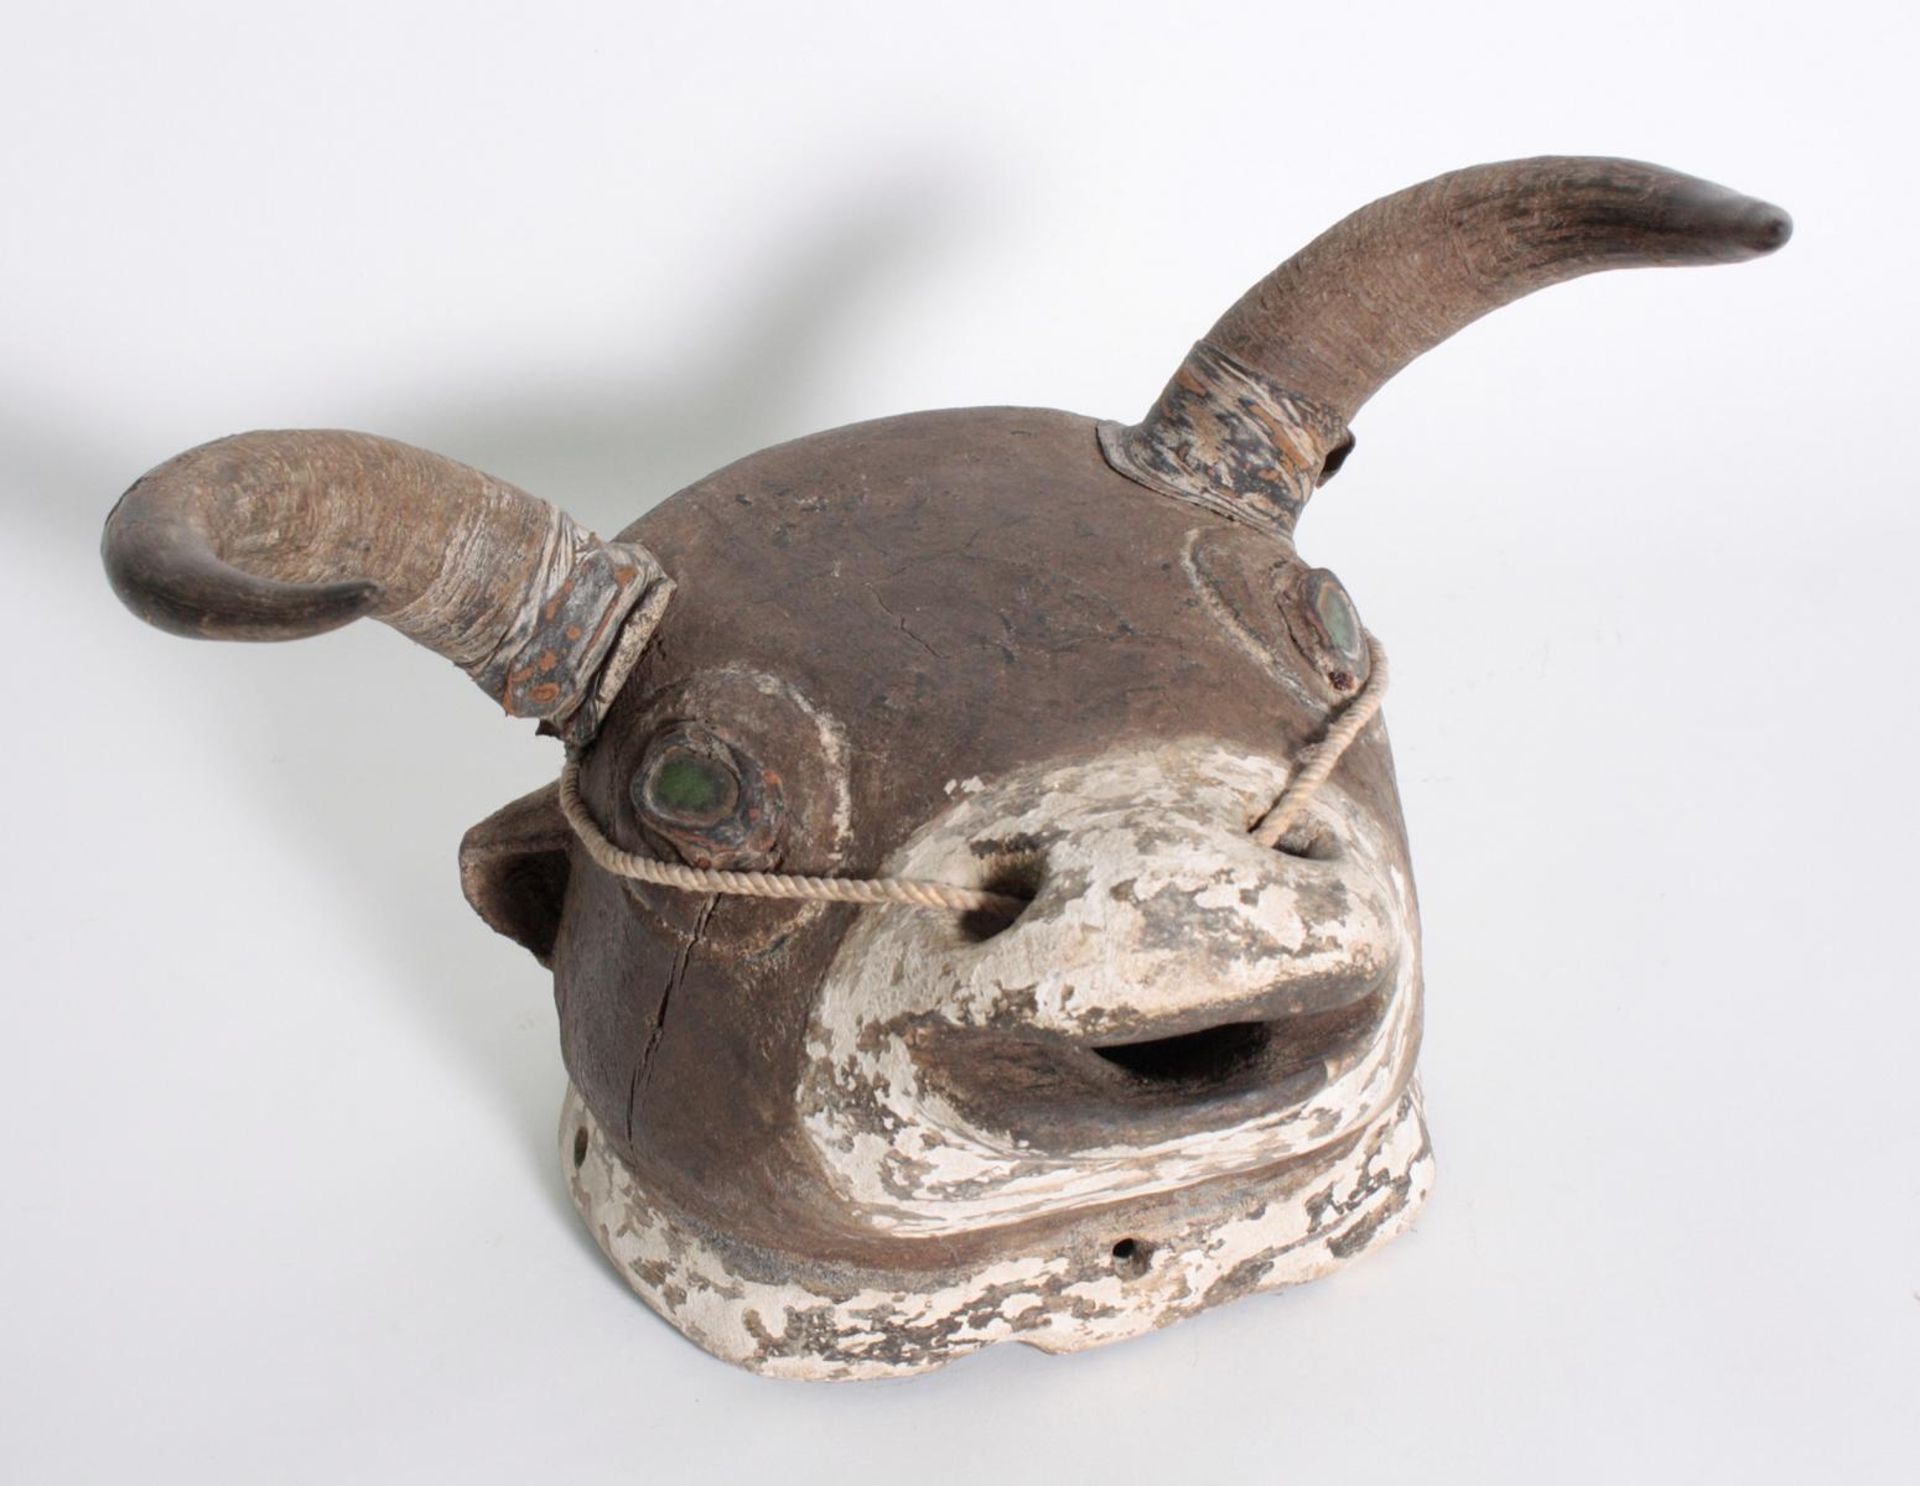 Bidjogo-Maske, Guinea BissauHolz in Form eines Bullenkopfes. Augen mit grüner Glaseinlage, echte